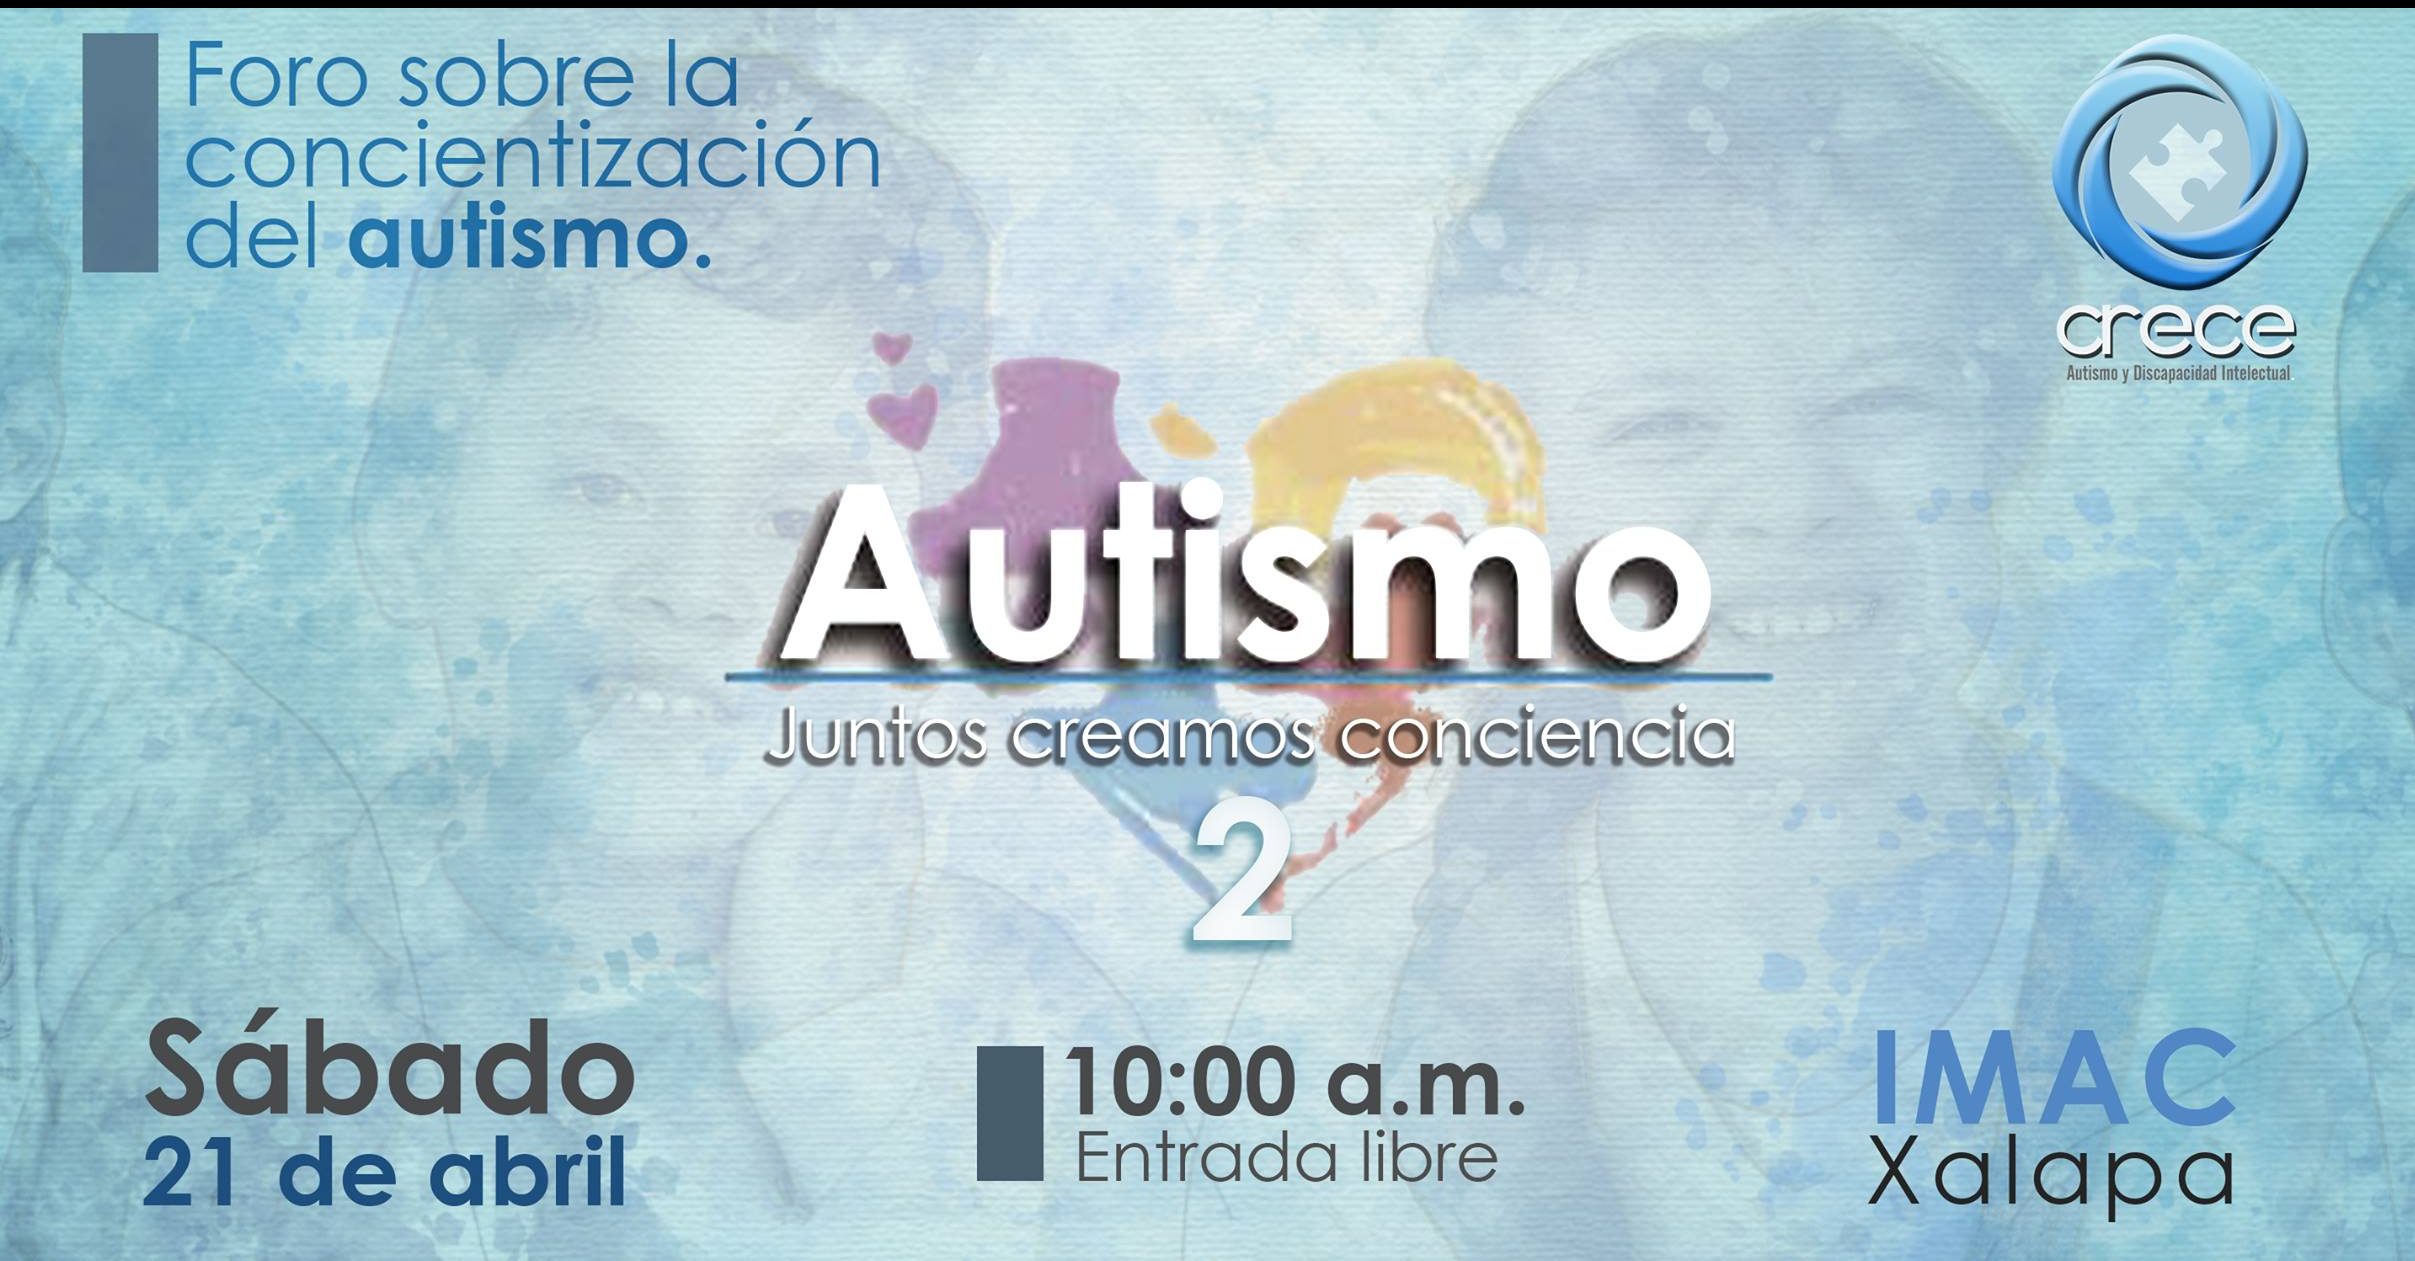 Realizarán foro sobre la concientización del autismo en Xalapa